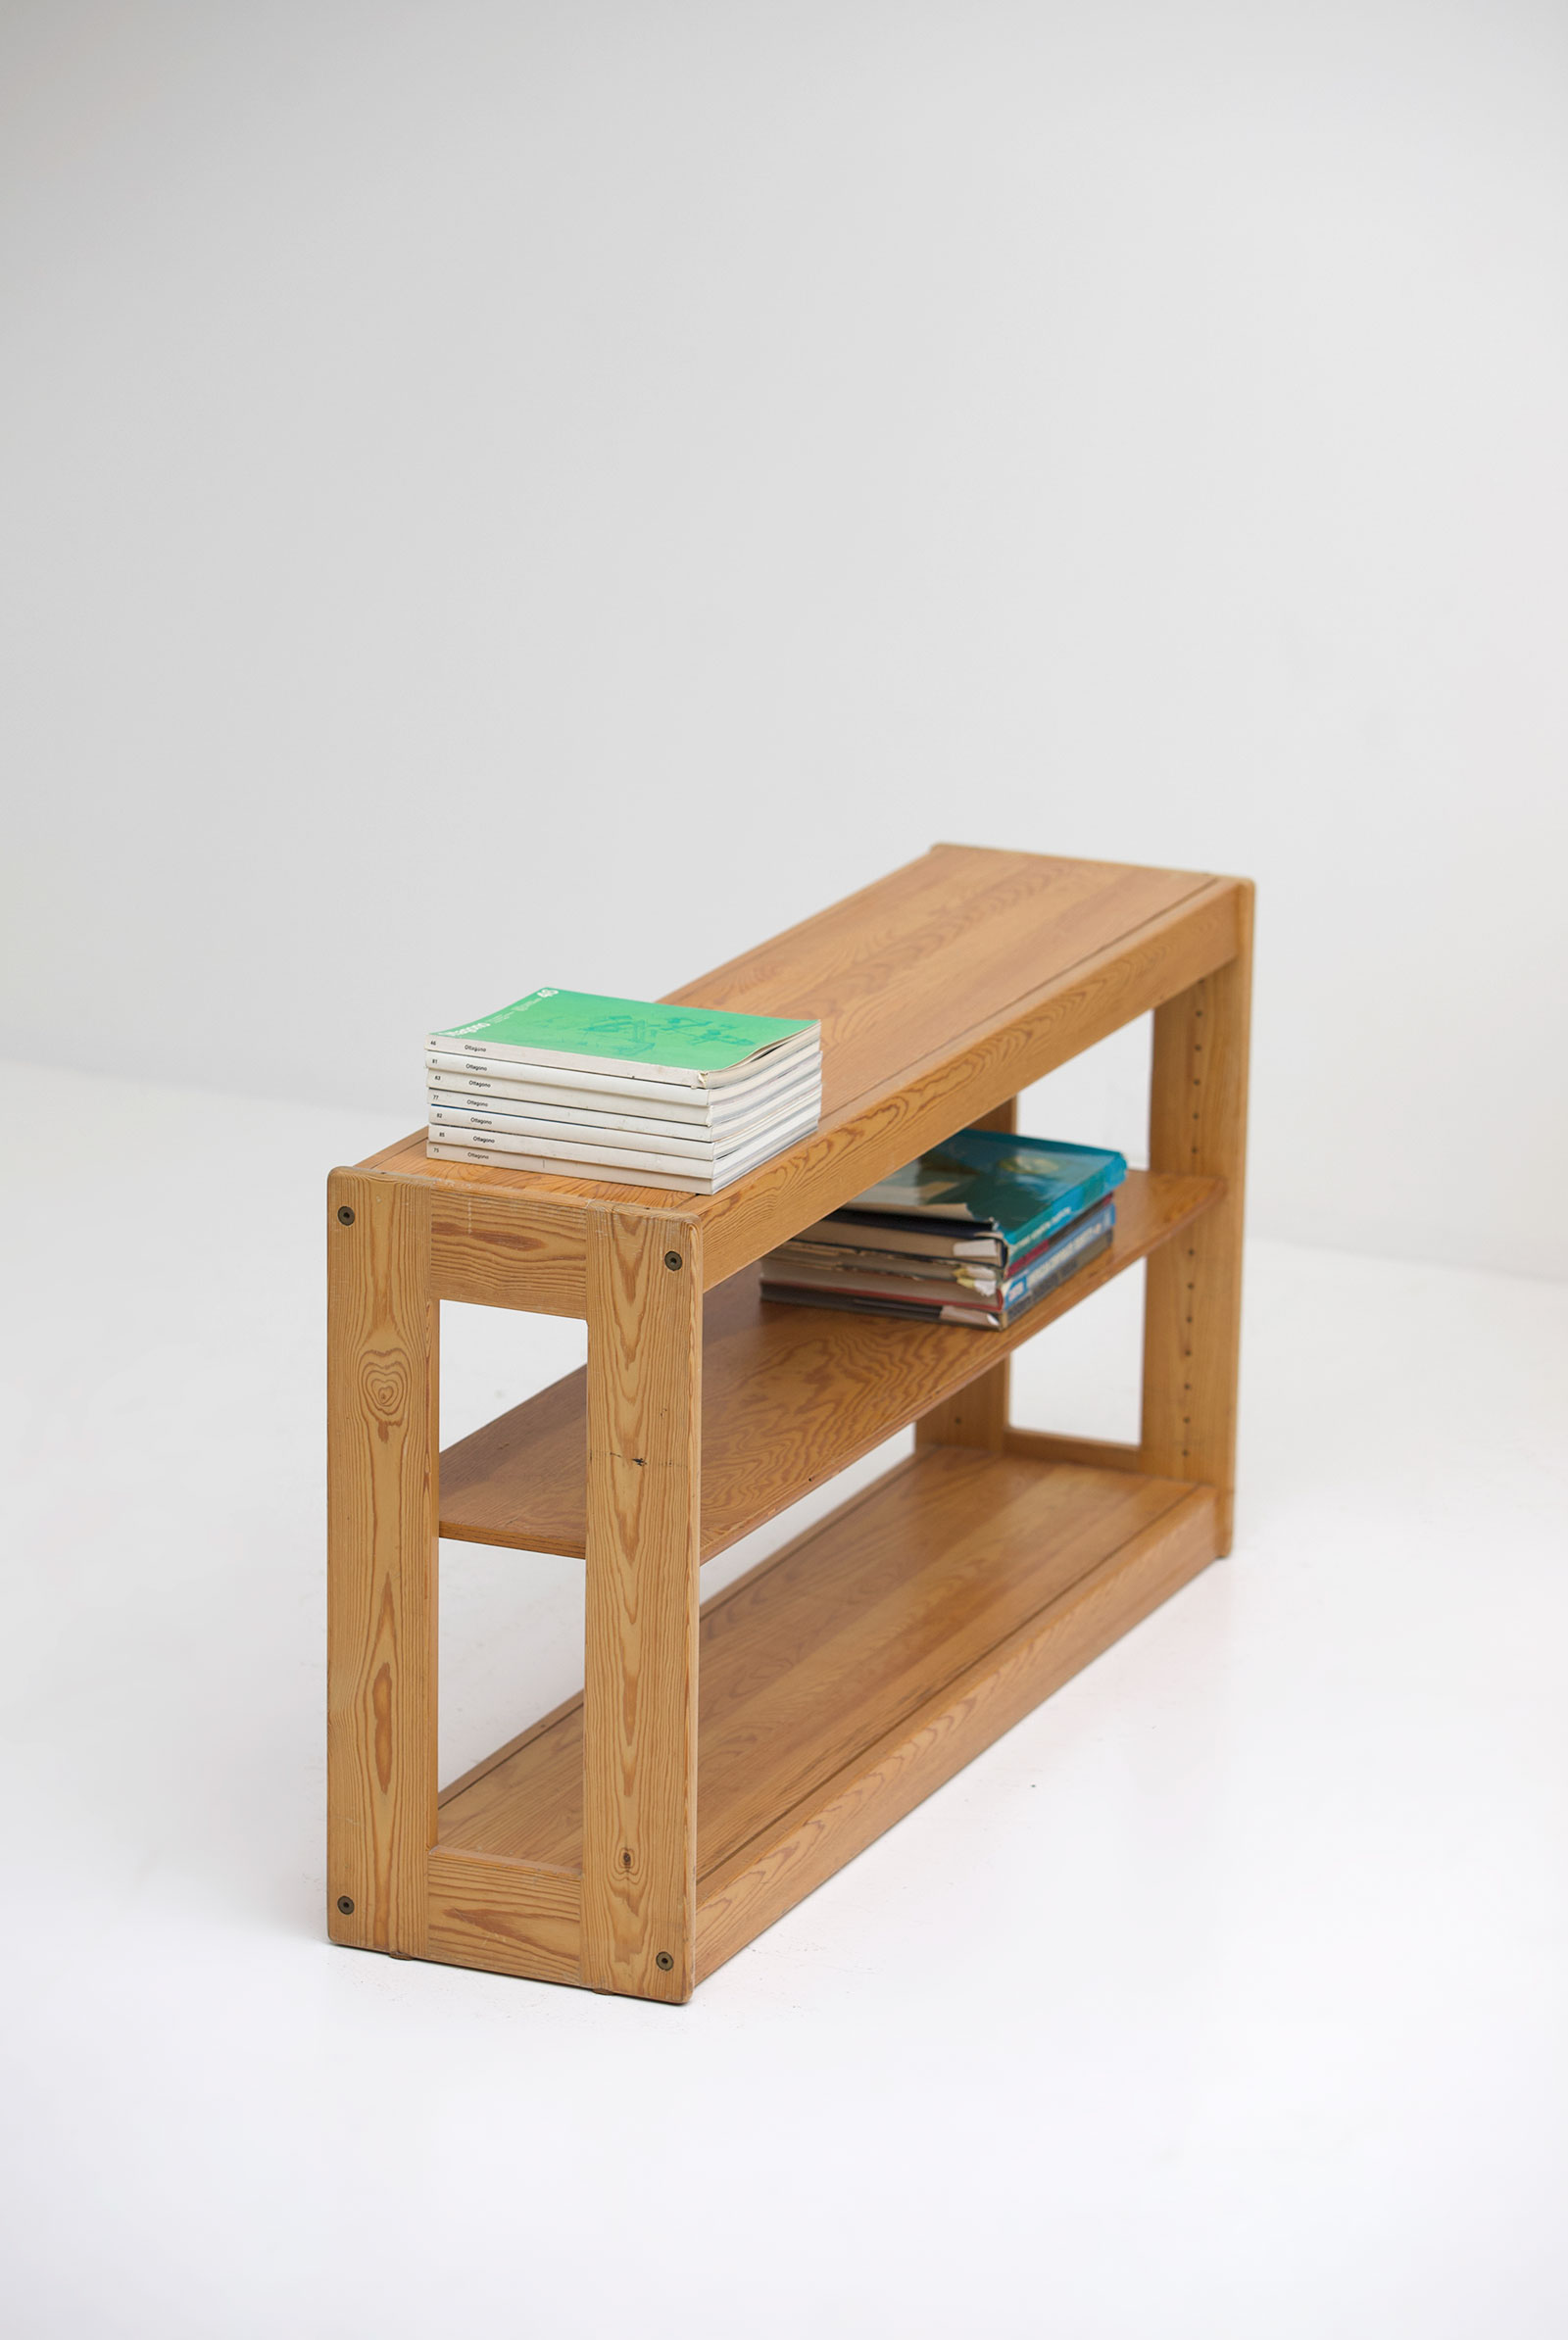 Childrens desk furniture by Pierre Grosjean setimage 11